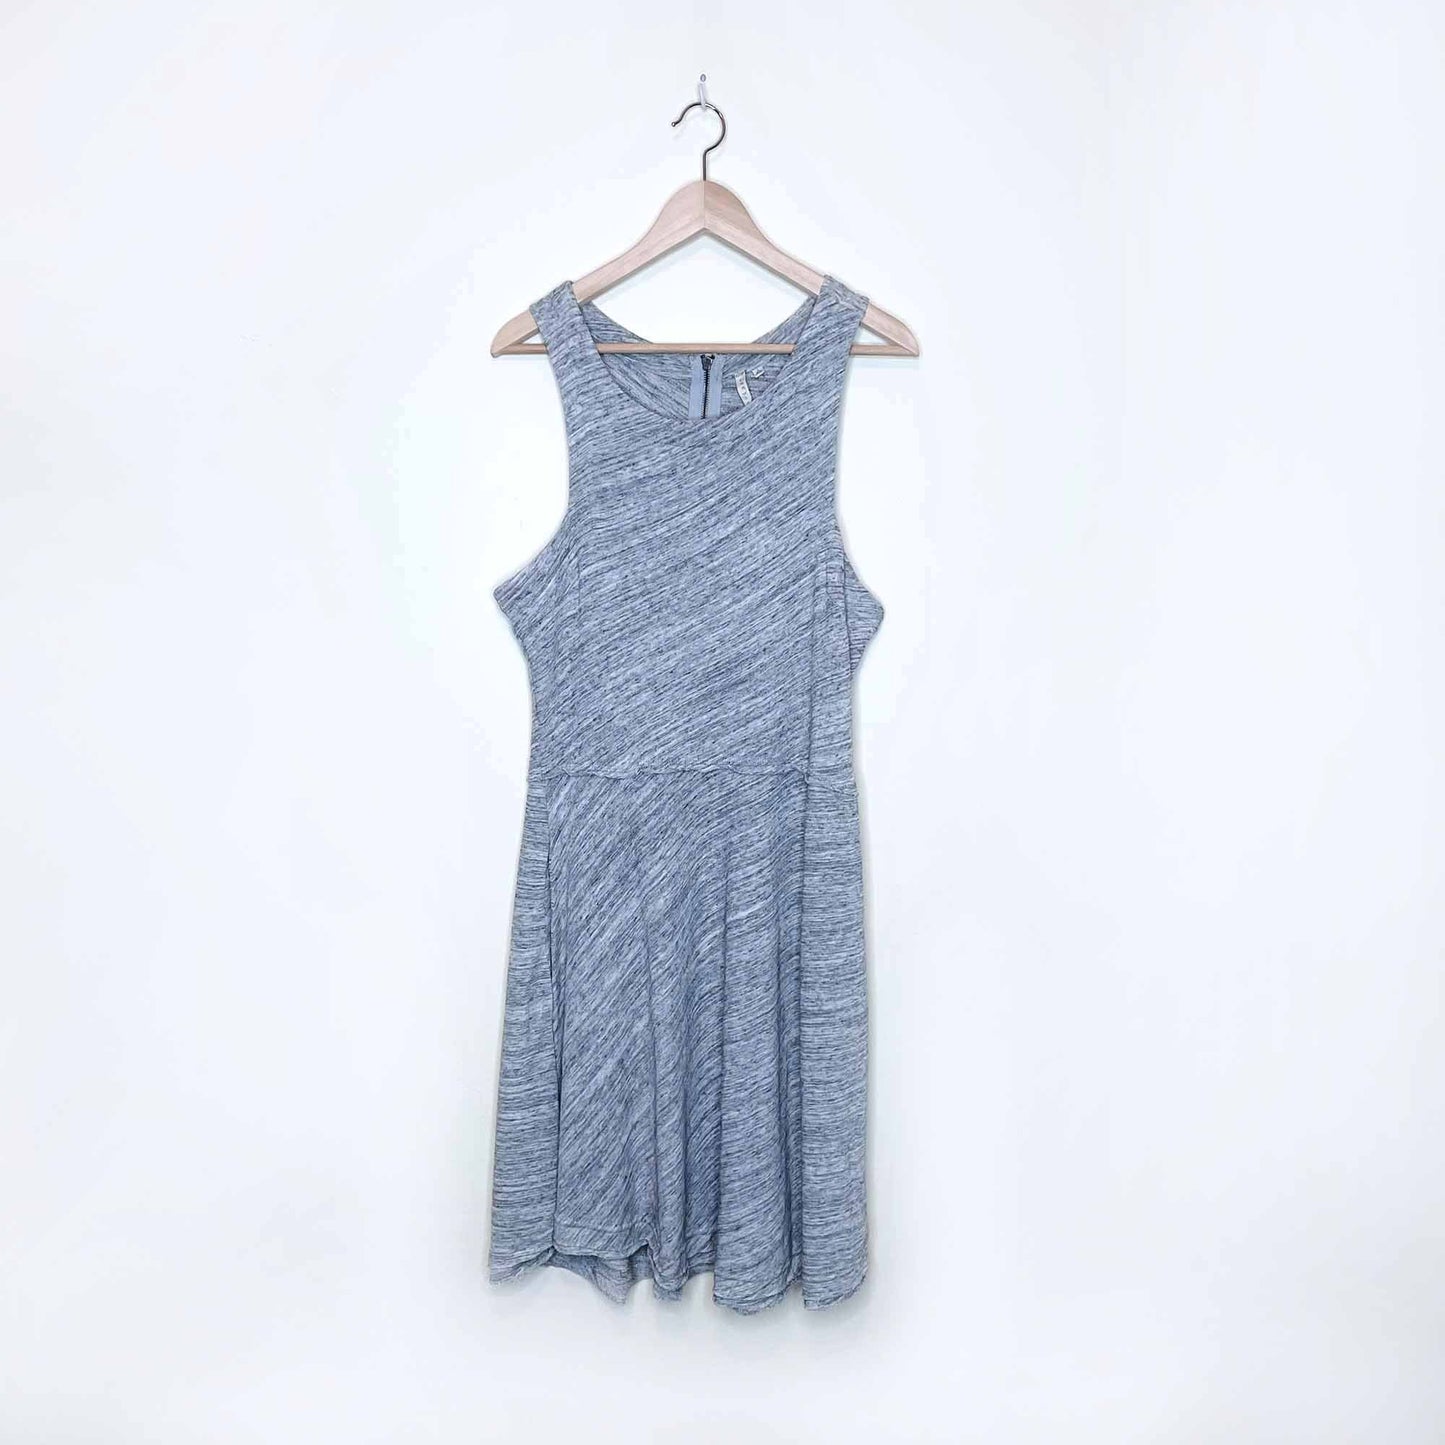 grey state apparel heather melange high neck summer dress - size large